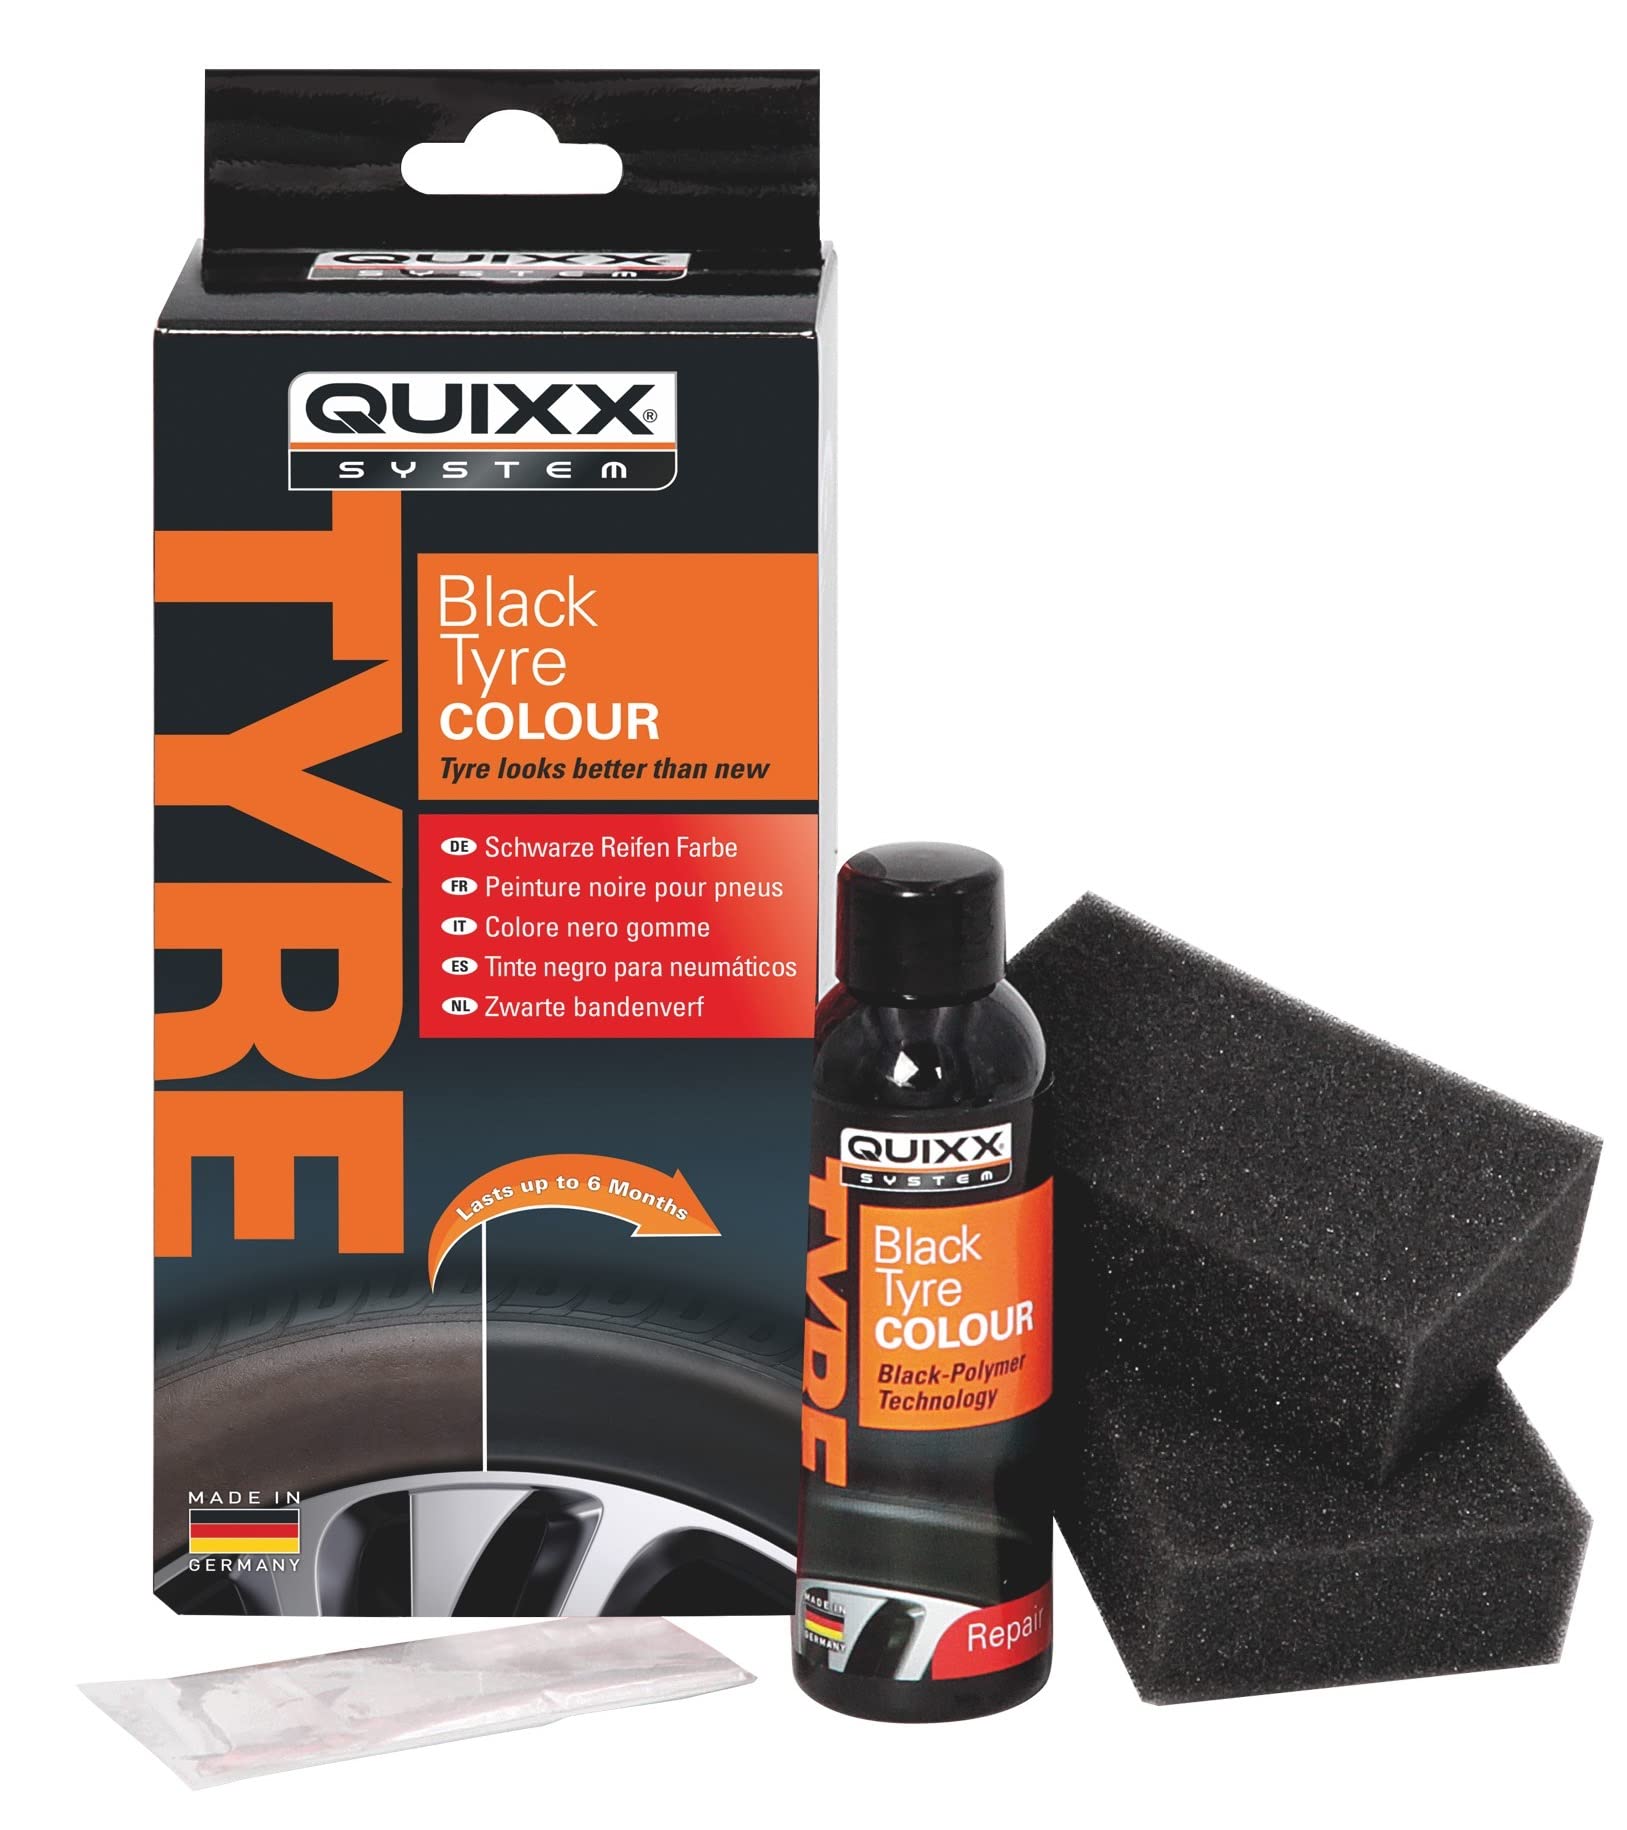 QUIXX Schwarze Reifen Farbe zur Farbauffrischung von Reifen, schnelltrocknend und langanhaltend von Quixx